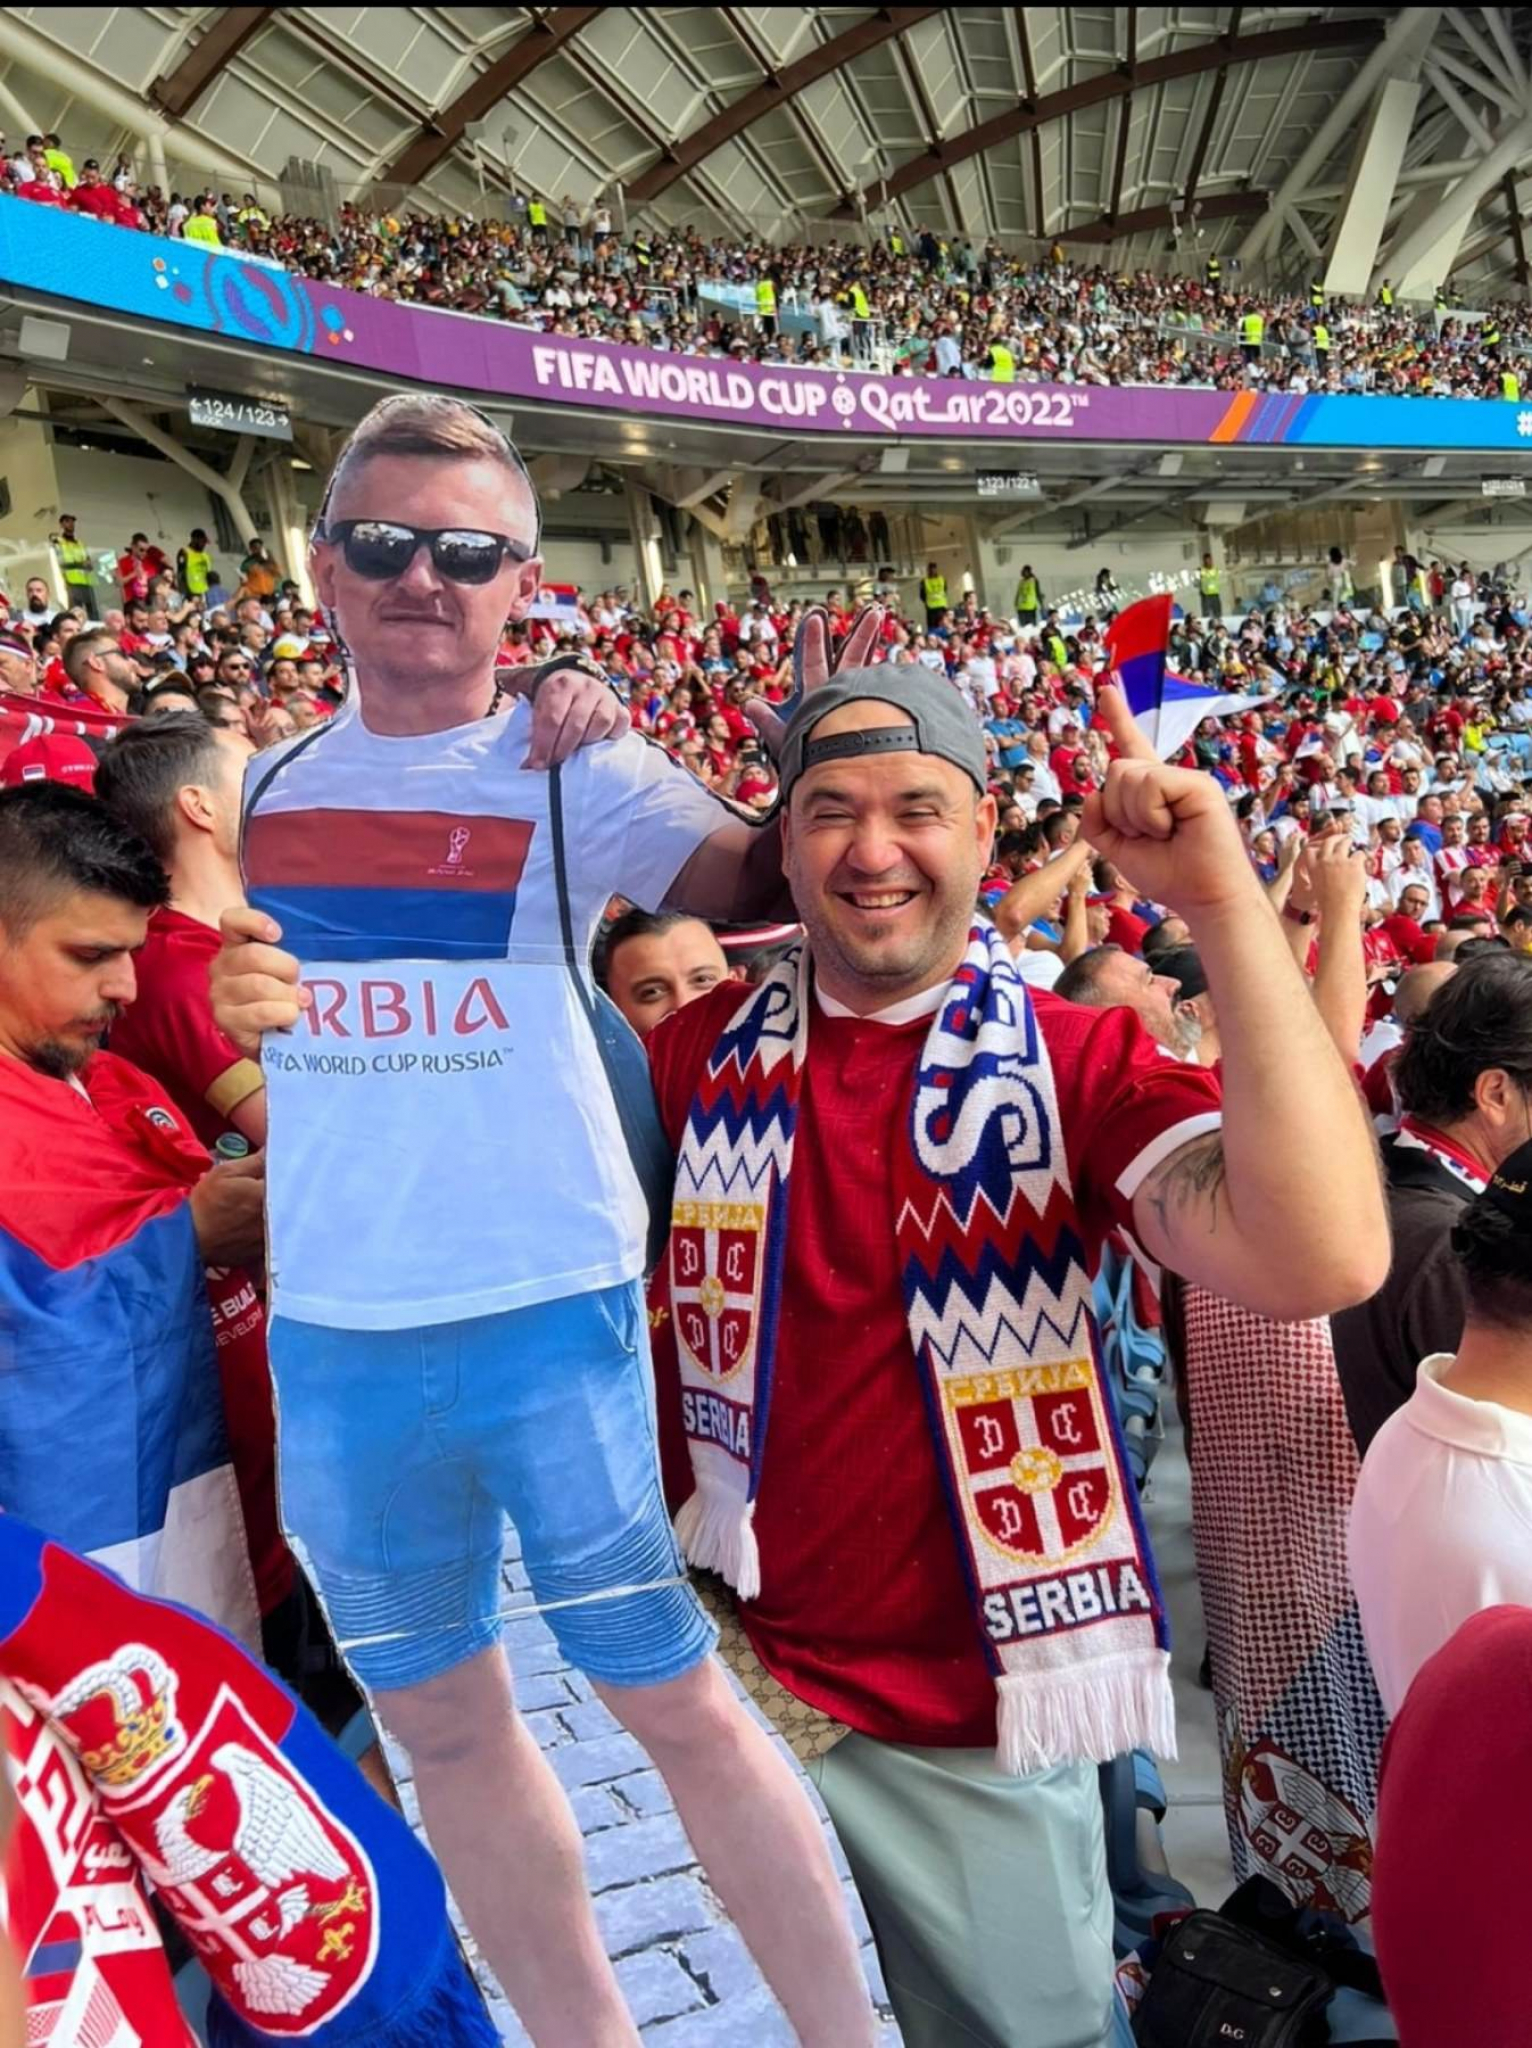 NAJLUĐA PRIČA SVETSKOG PRVENSTVA Kako je Srbin umesto navijačkog rekvizita na utakmicu poneo šuraka (FOTO)